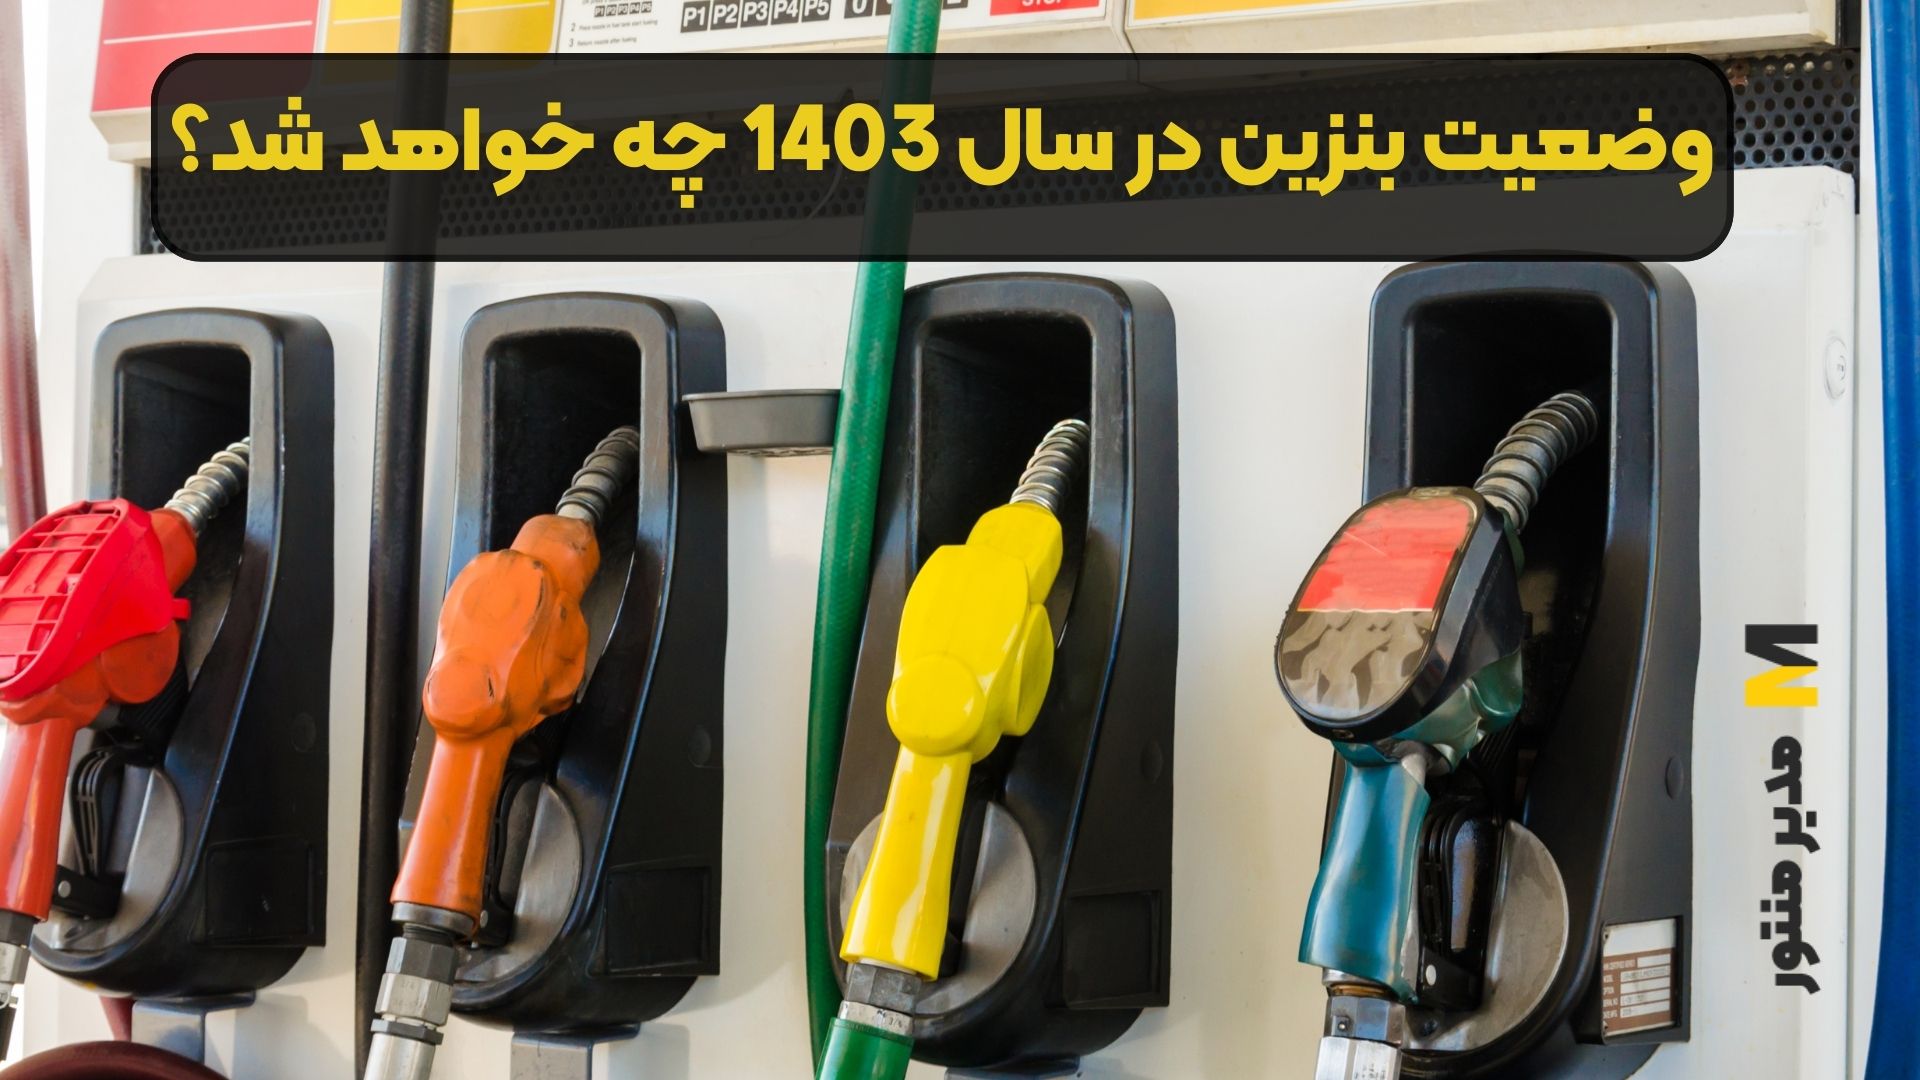 وضعیت بنزین در سال 1403 چه خواهد شد؟